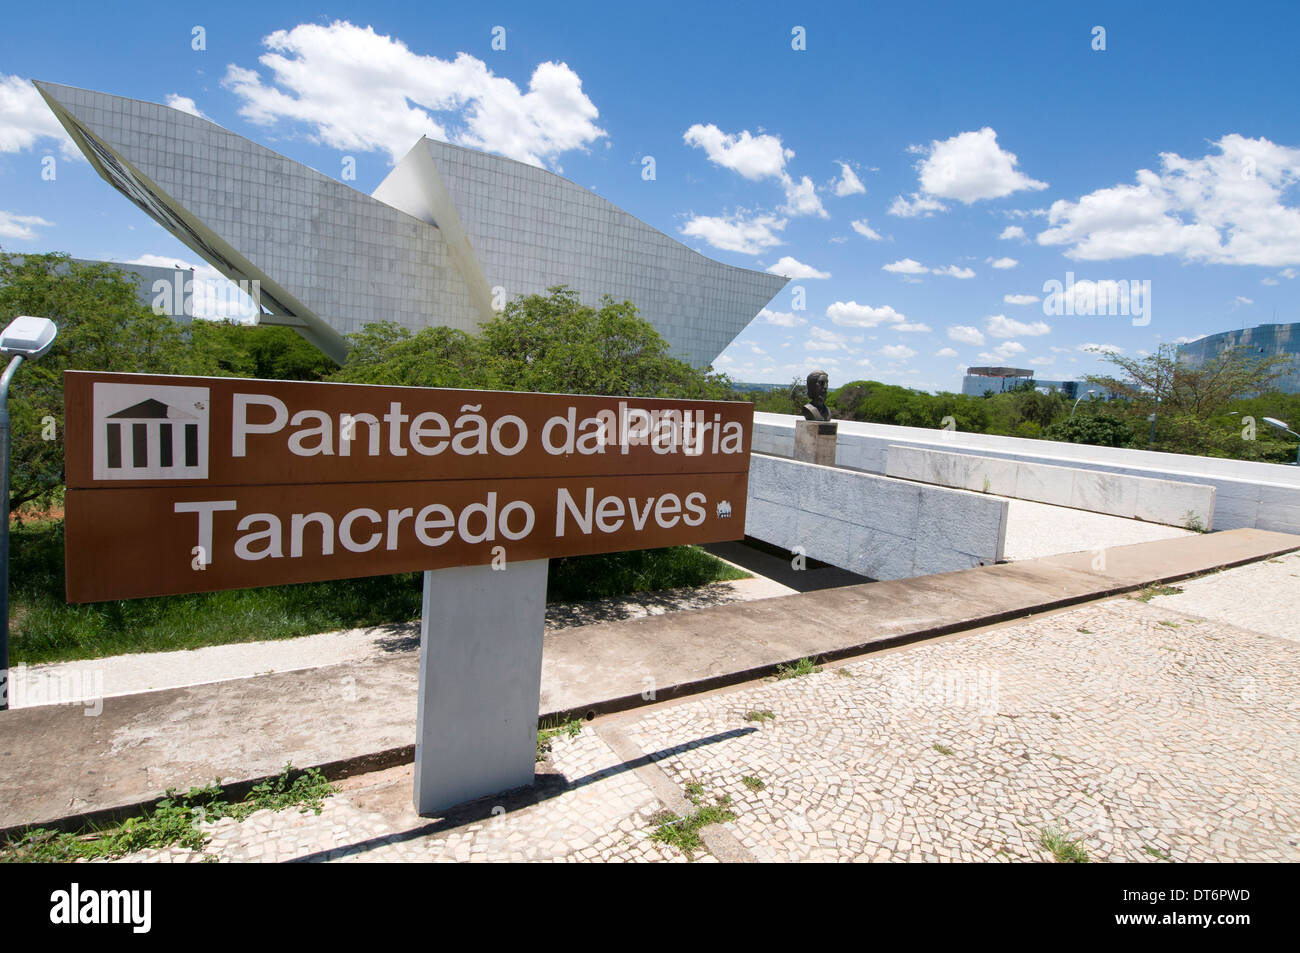 Panthéon de la liberté et de la démocratie ( Panteao da Patria e da Liberdade de Tancredo Neves trois puissances Square, Brasilia, Brésil Banque D'Images